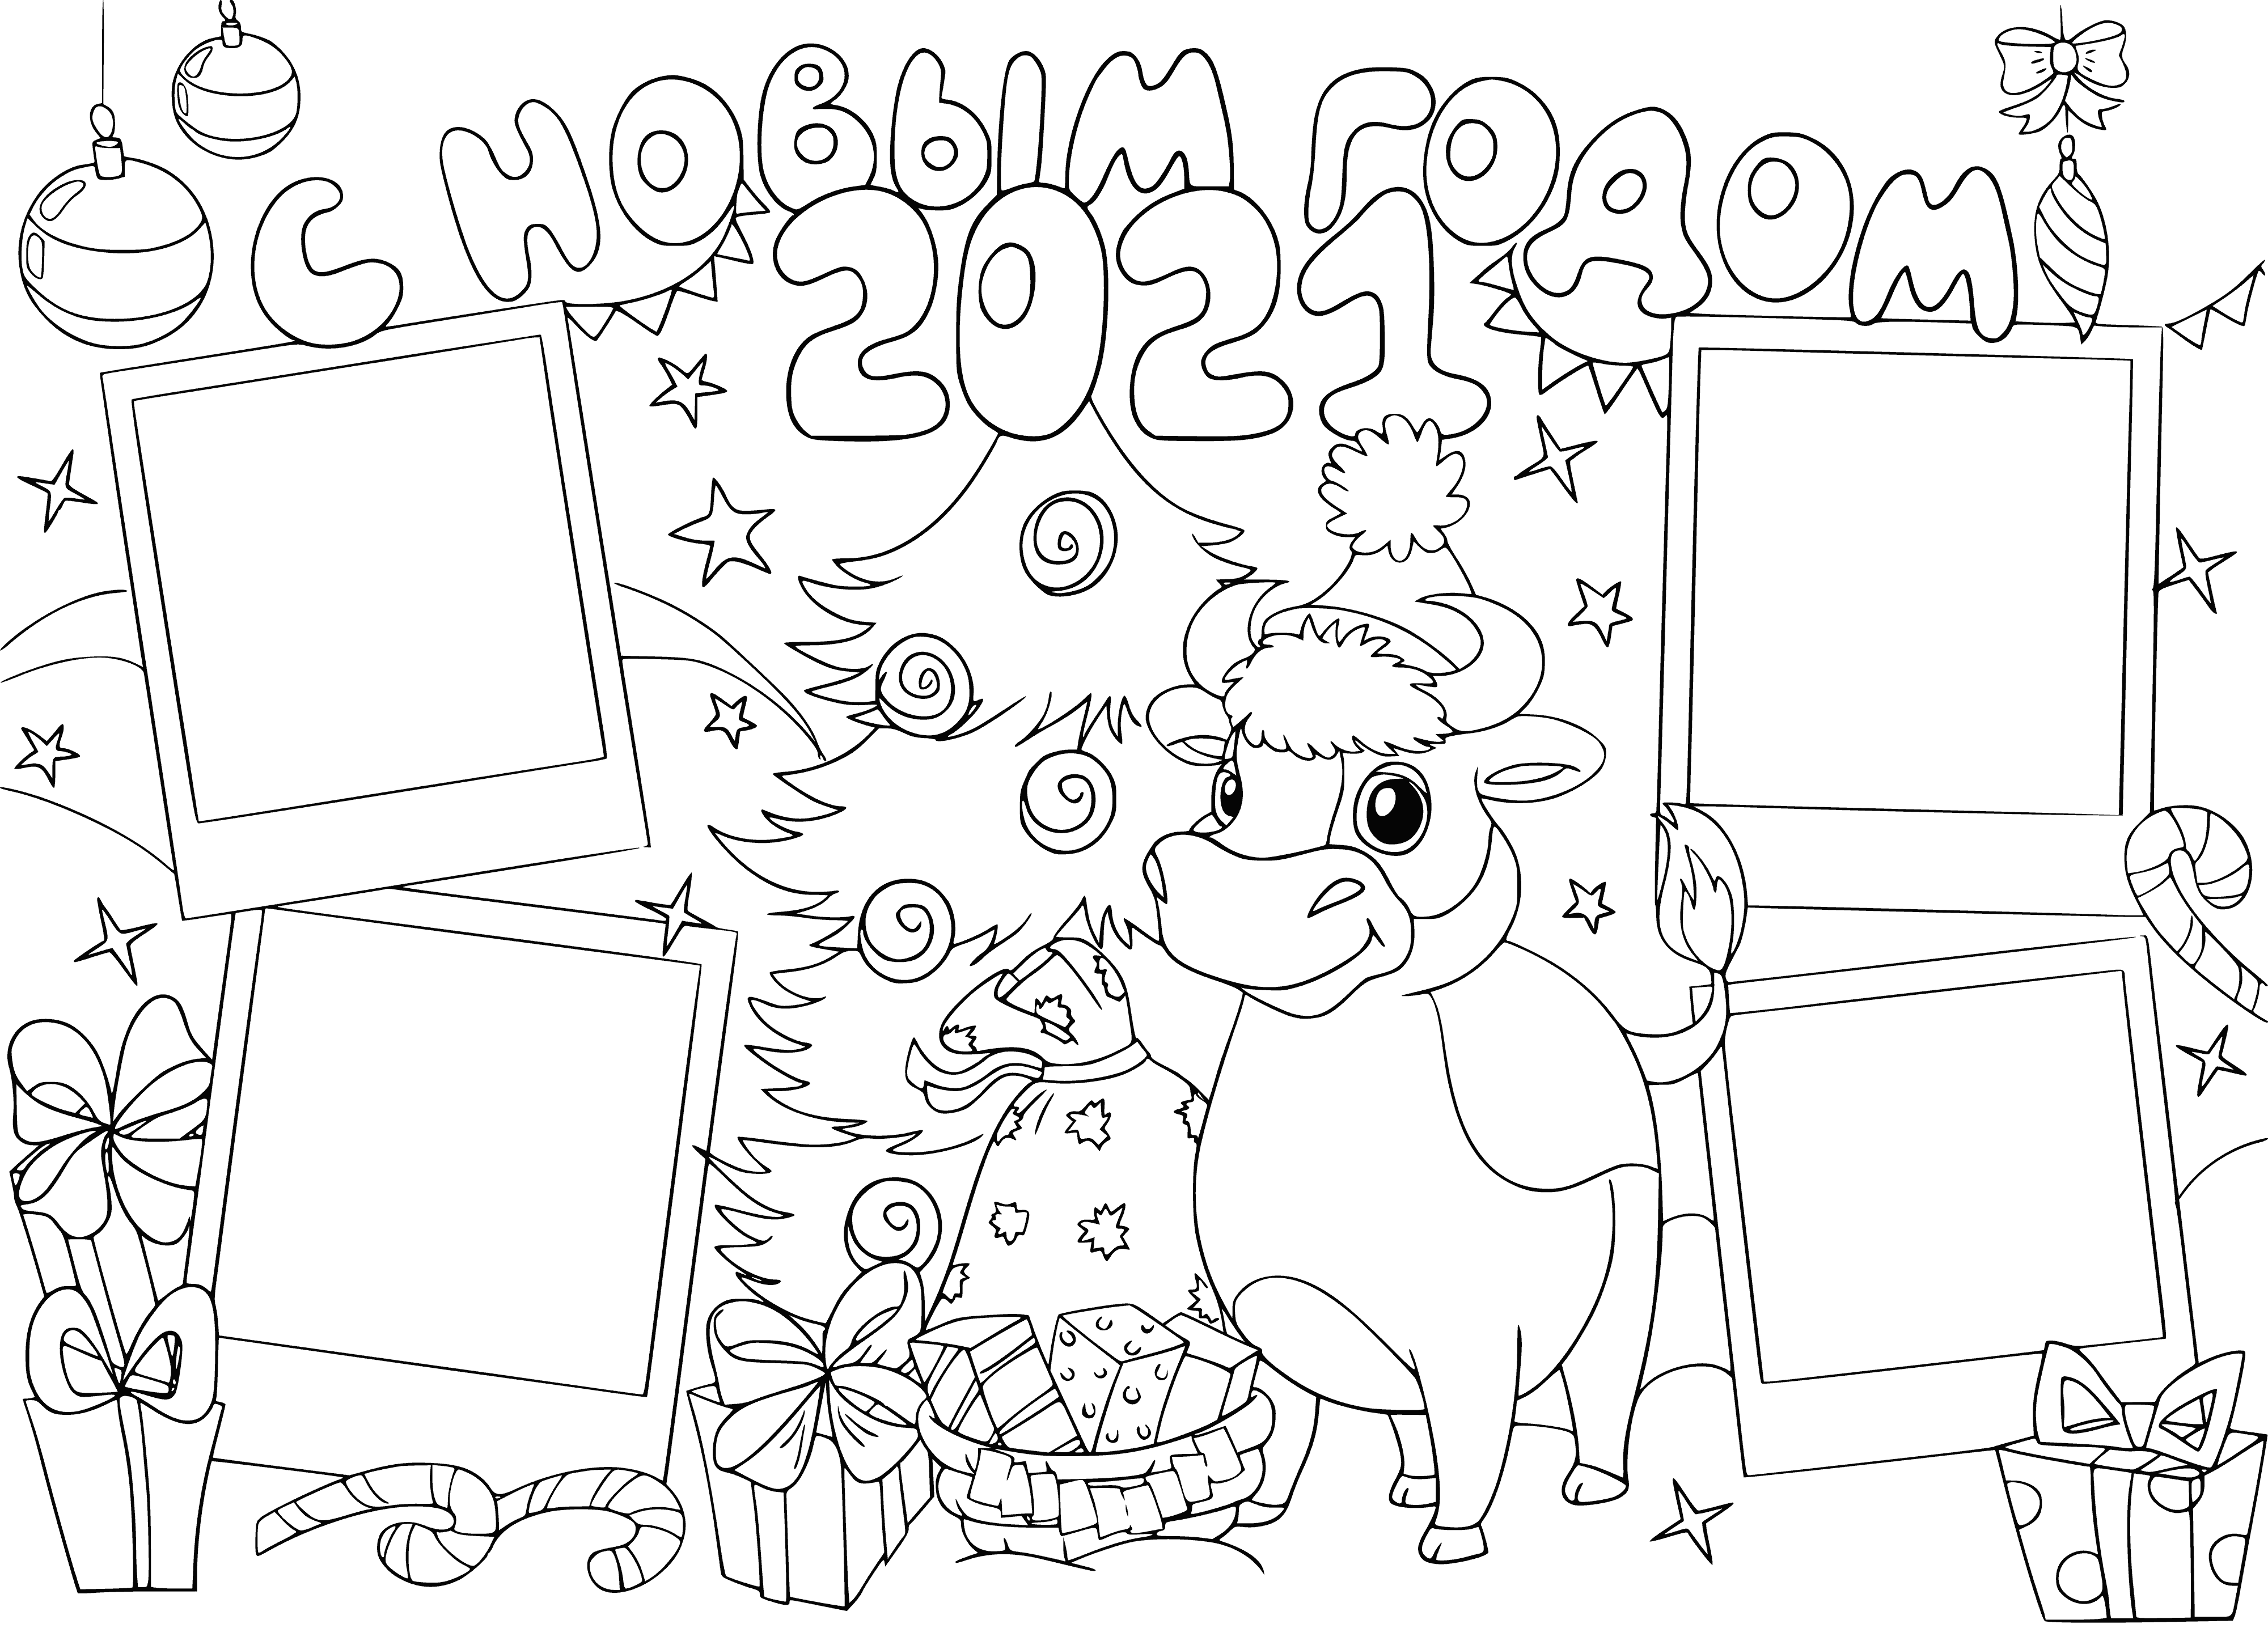 Szczęśliwego Nowego Roku 2021! kolorowanka